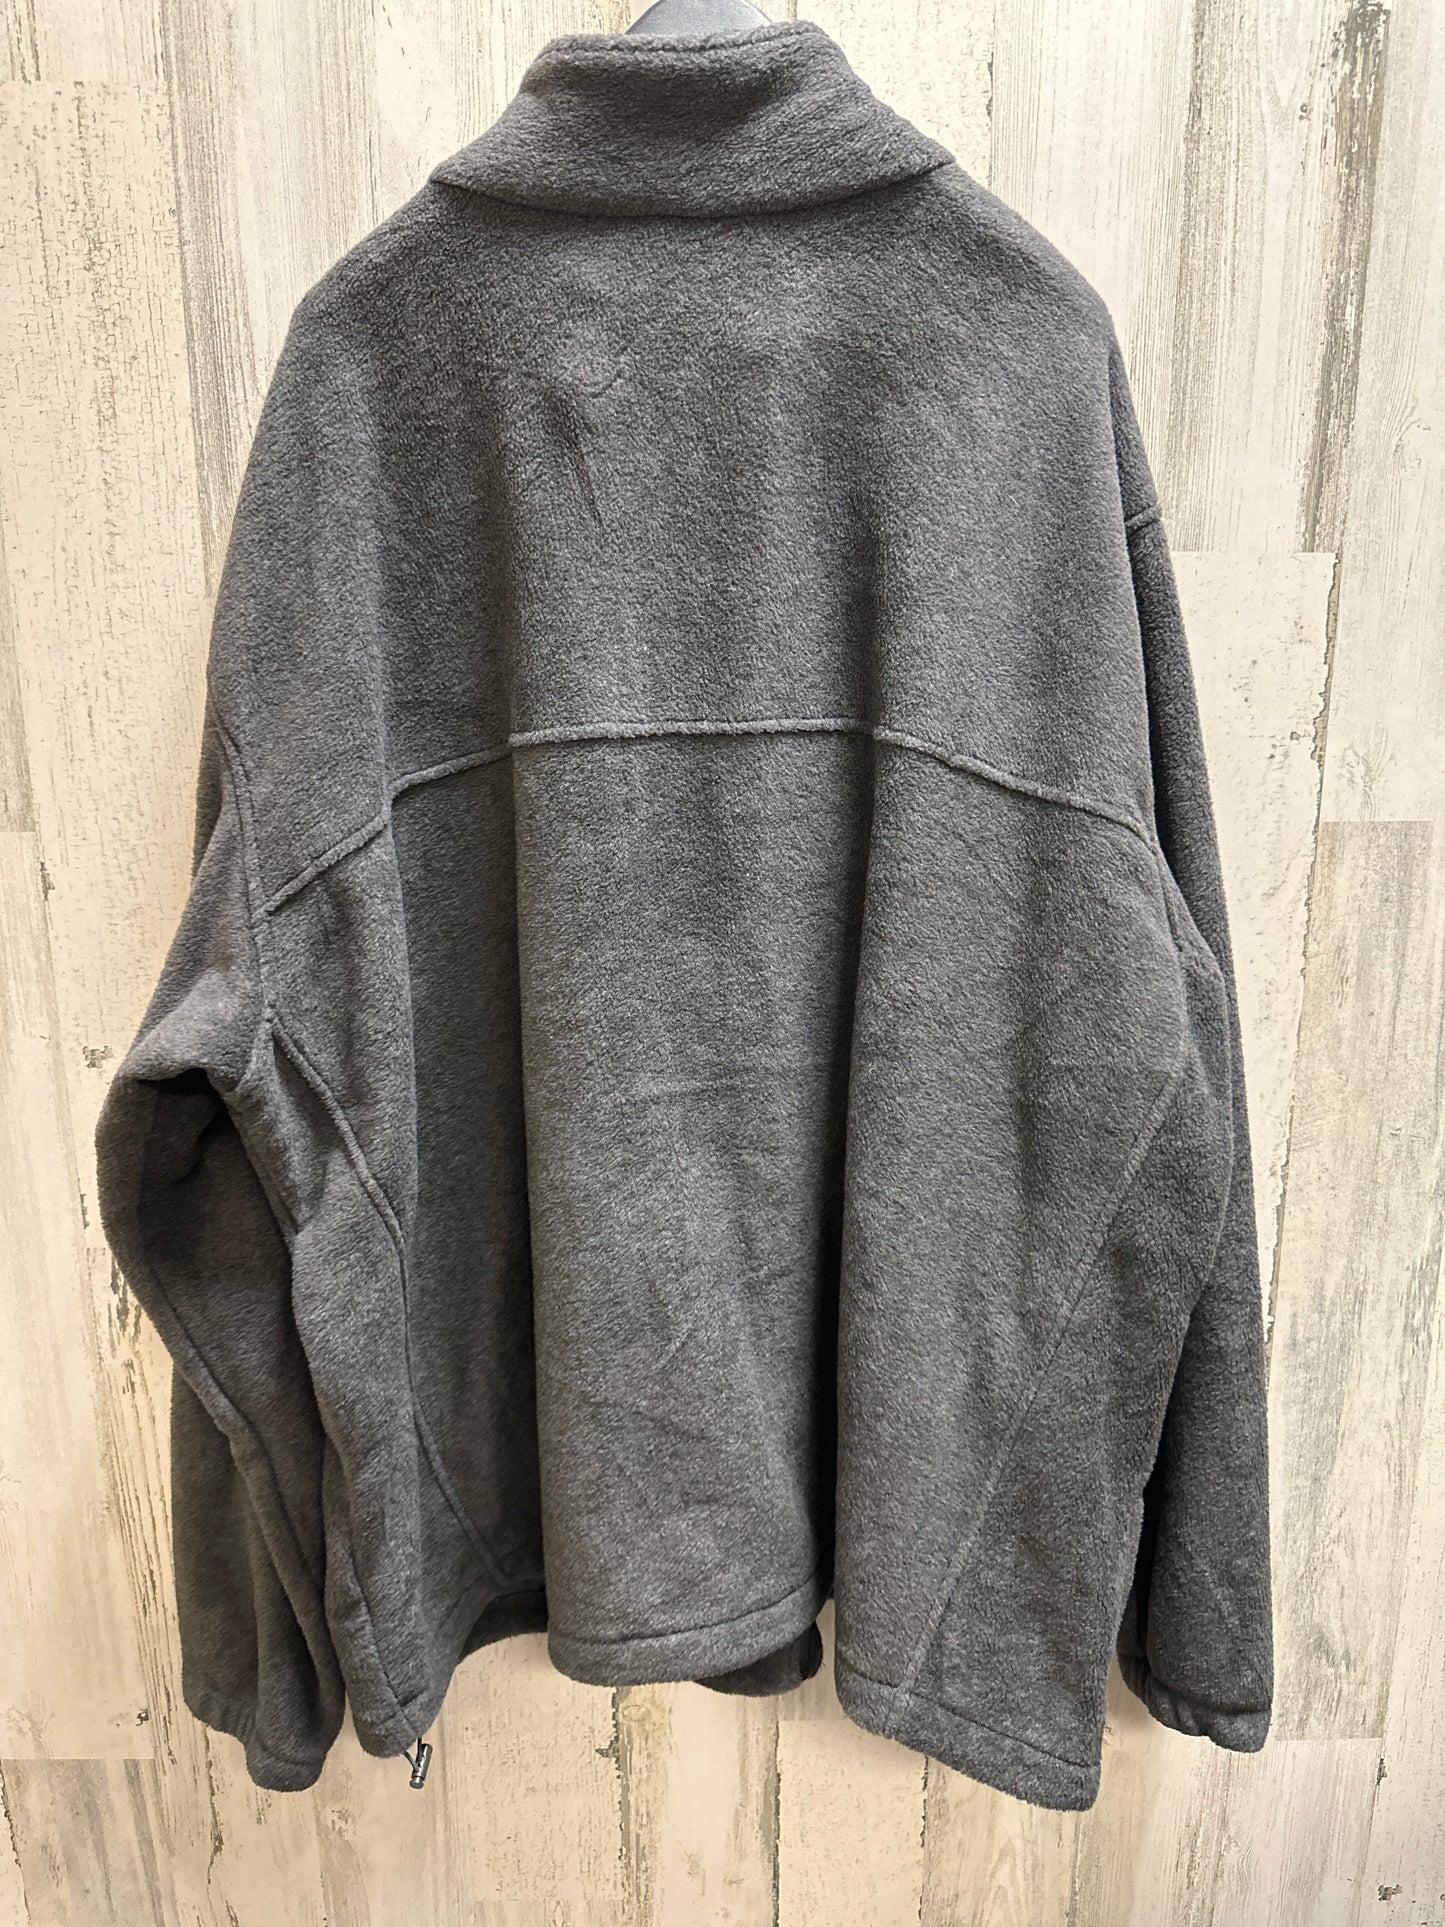 Jacket Fleece By Columbia  Size: 4x